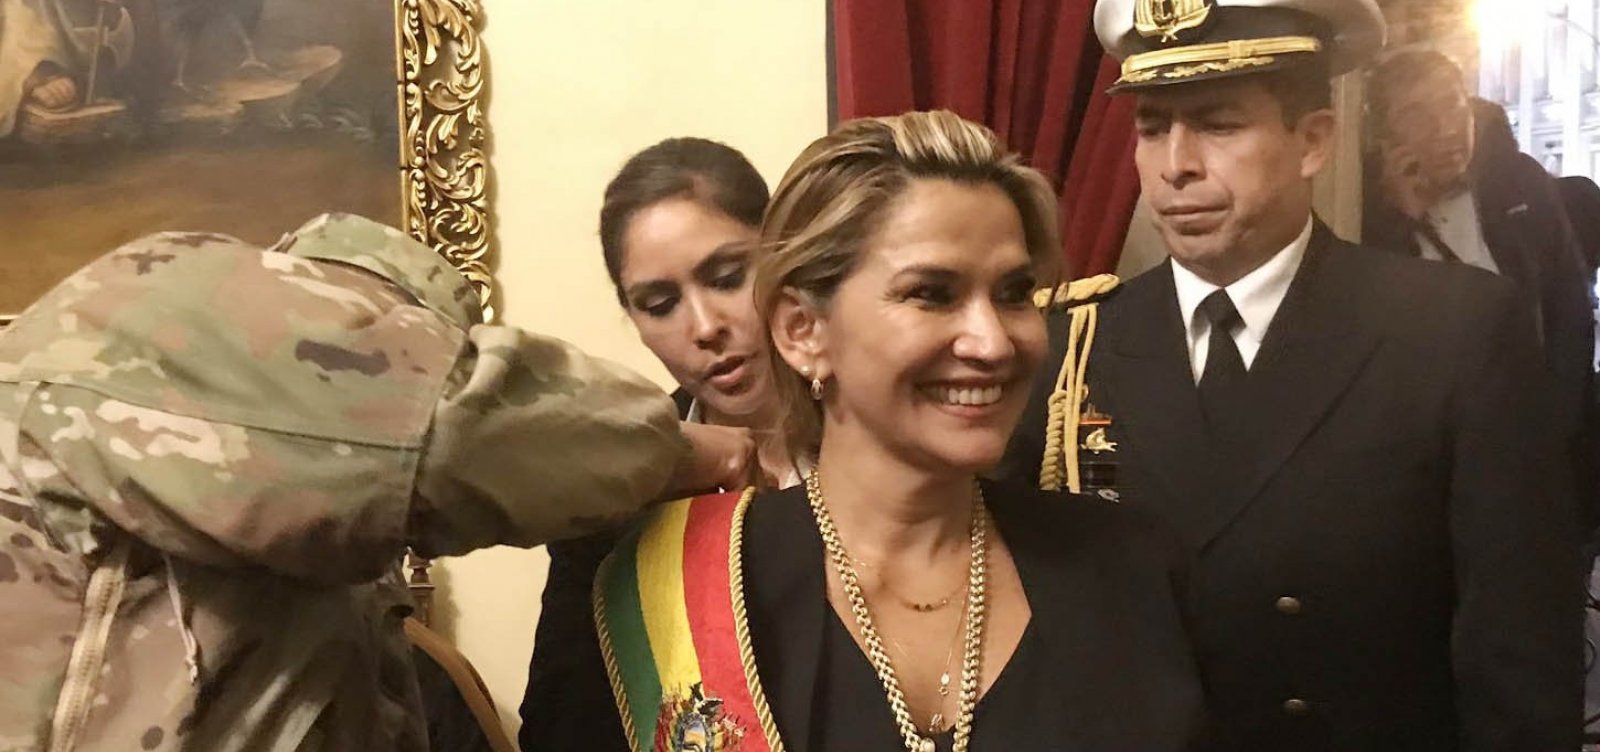 Presidente interina se aproxima de militares na Bolívia